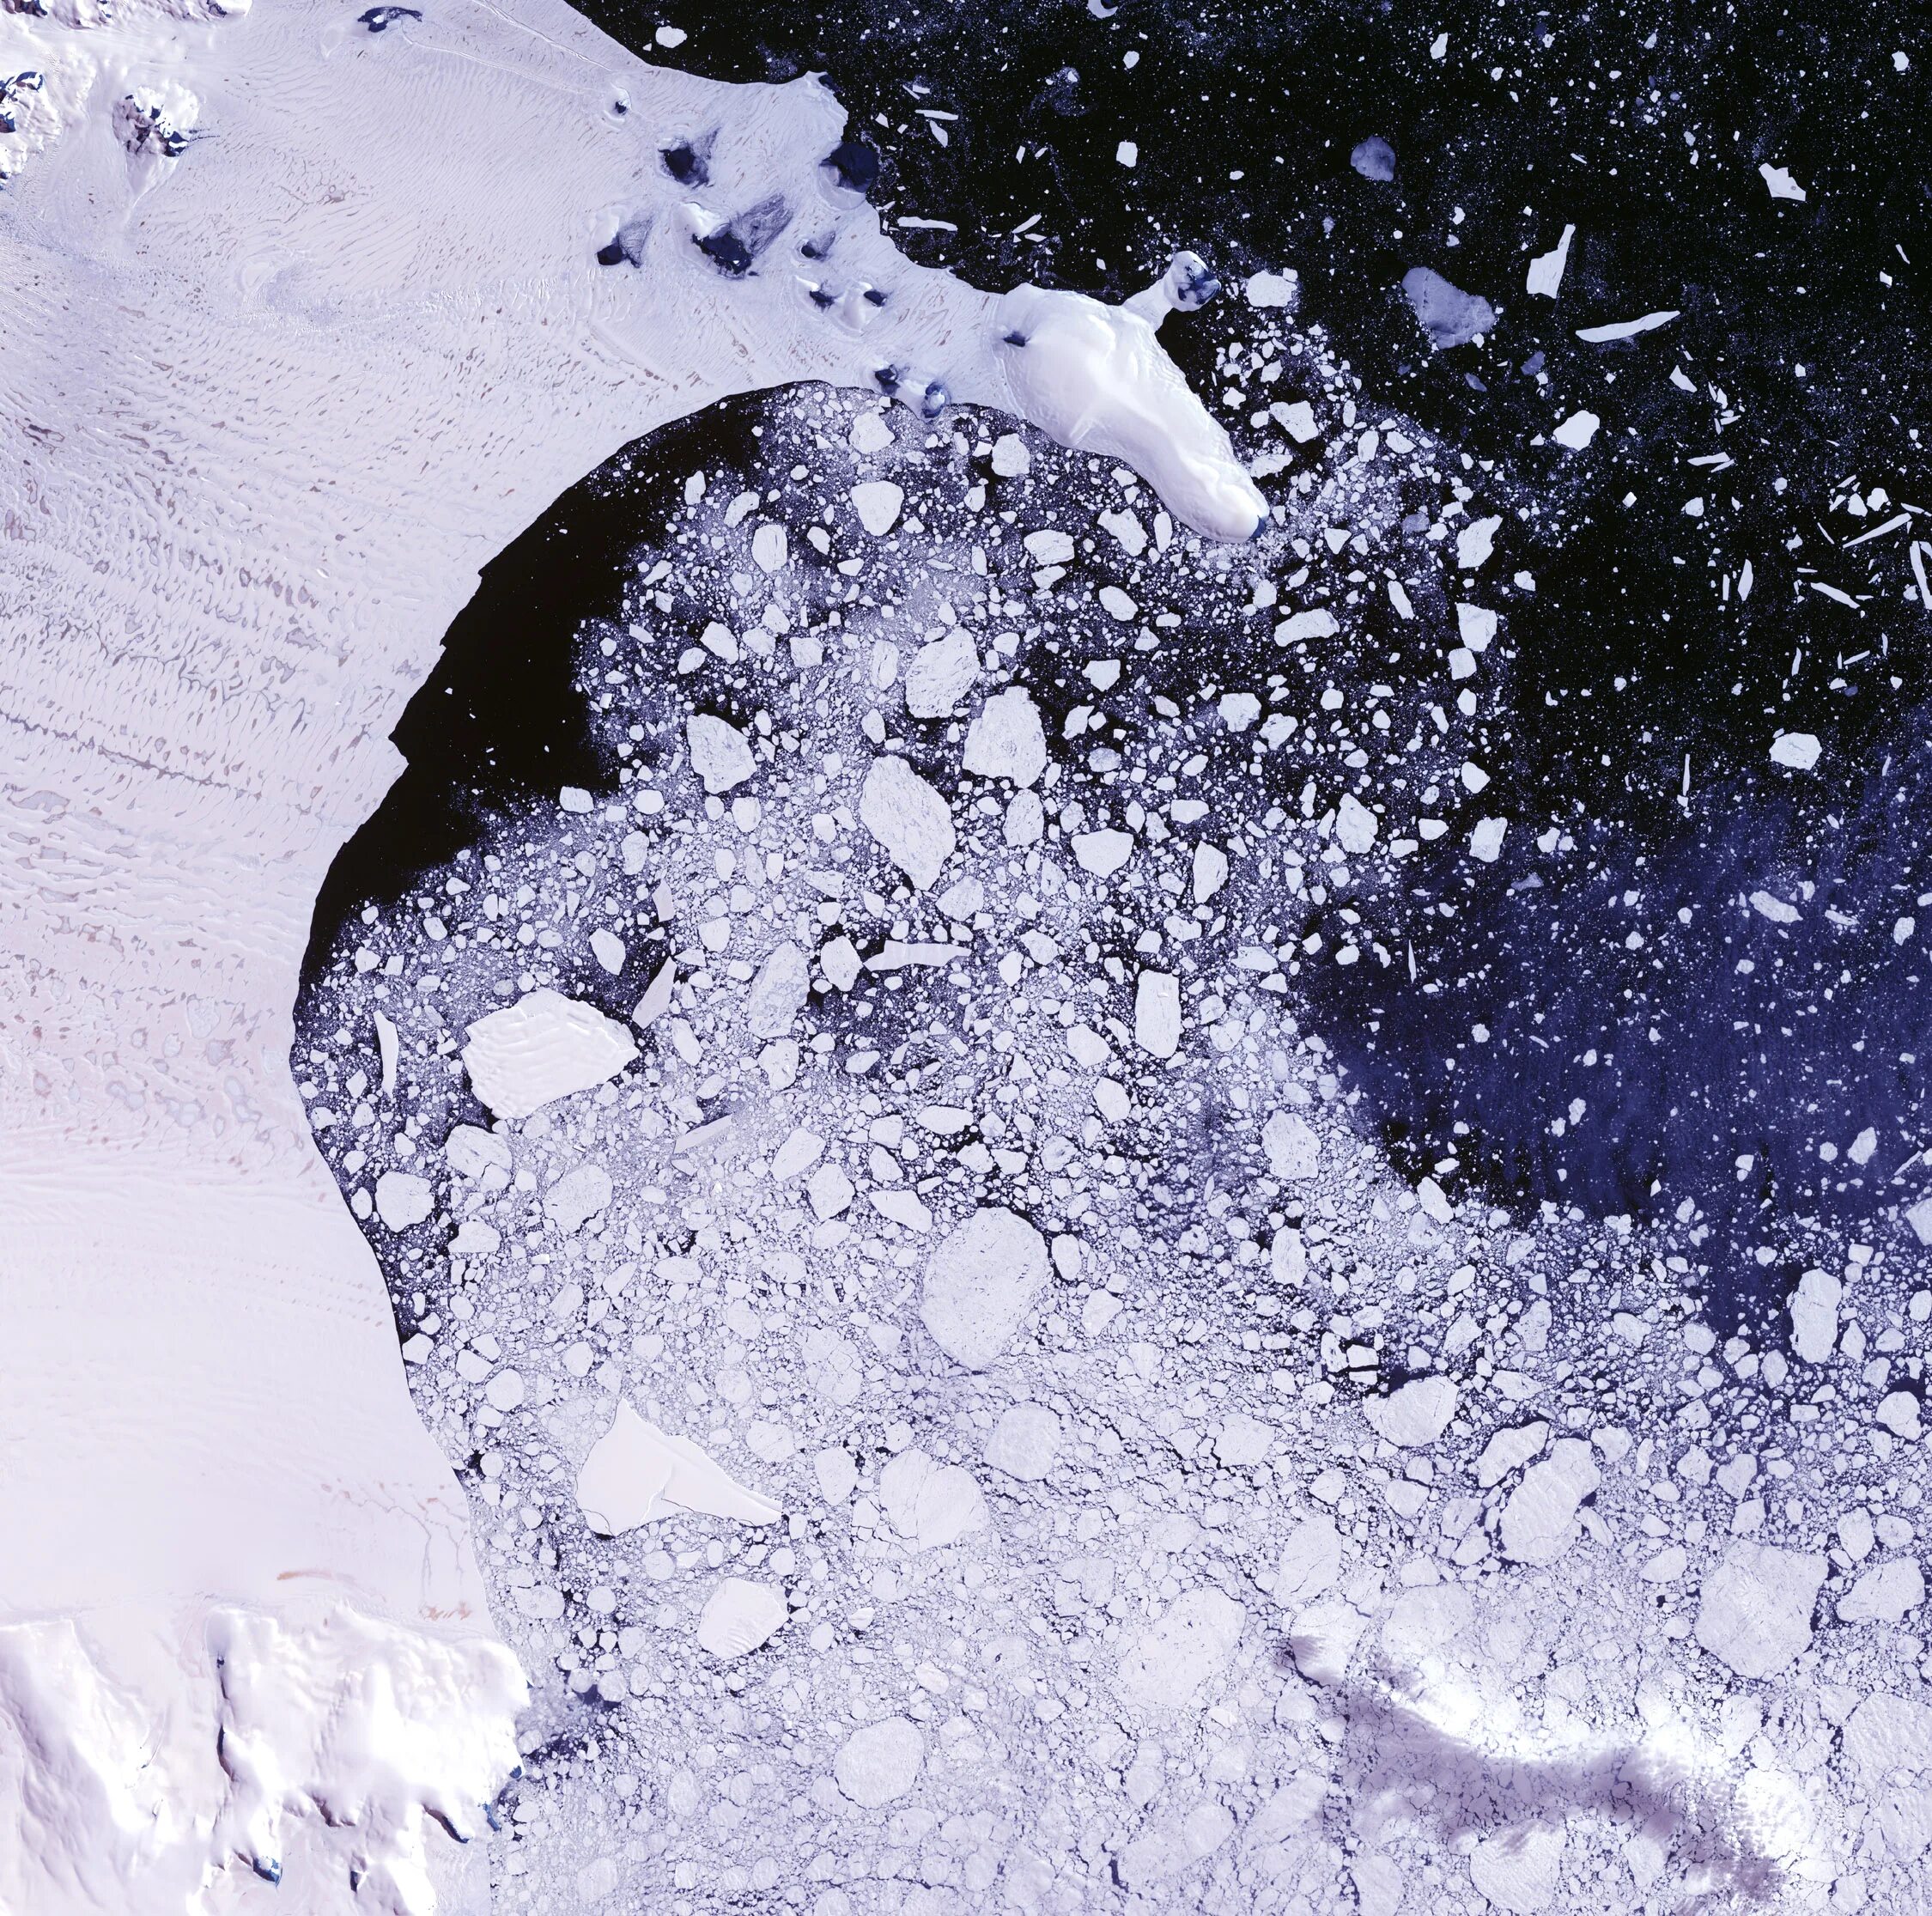 Сломай мой лед. Разбитый лед. Лед на поверхности воды. Шельфовый ледник Ларсена. Антарктида фон.